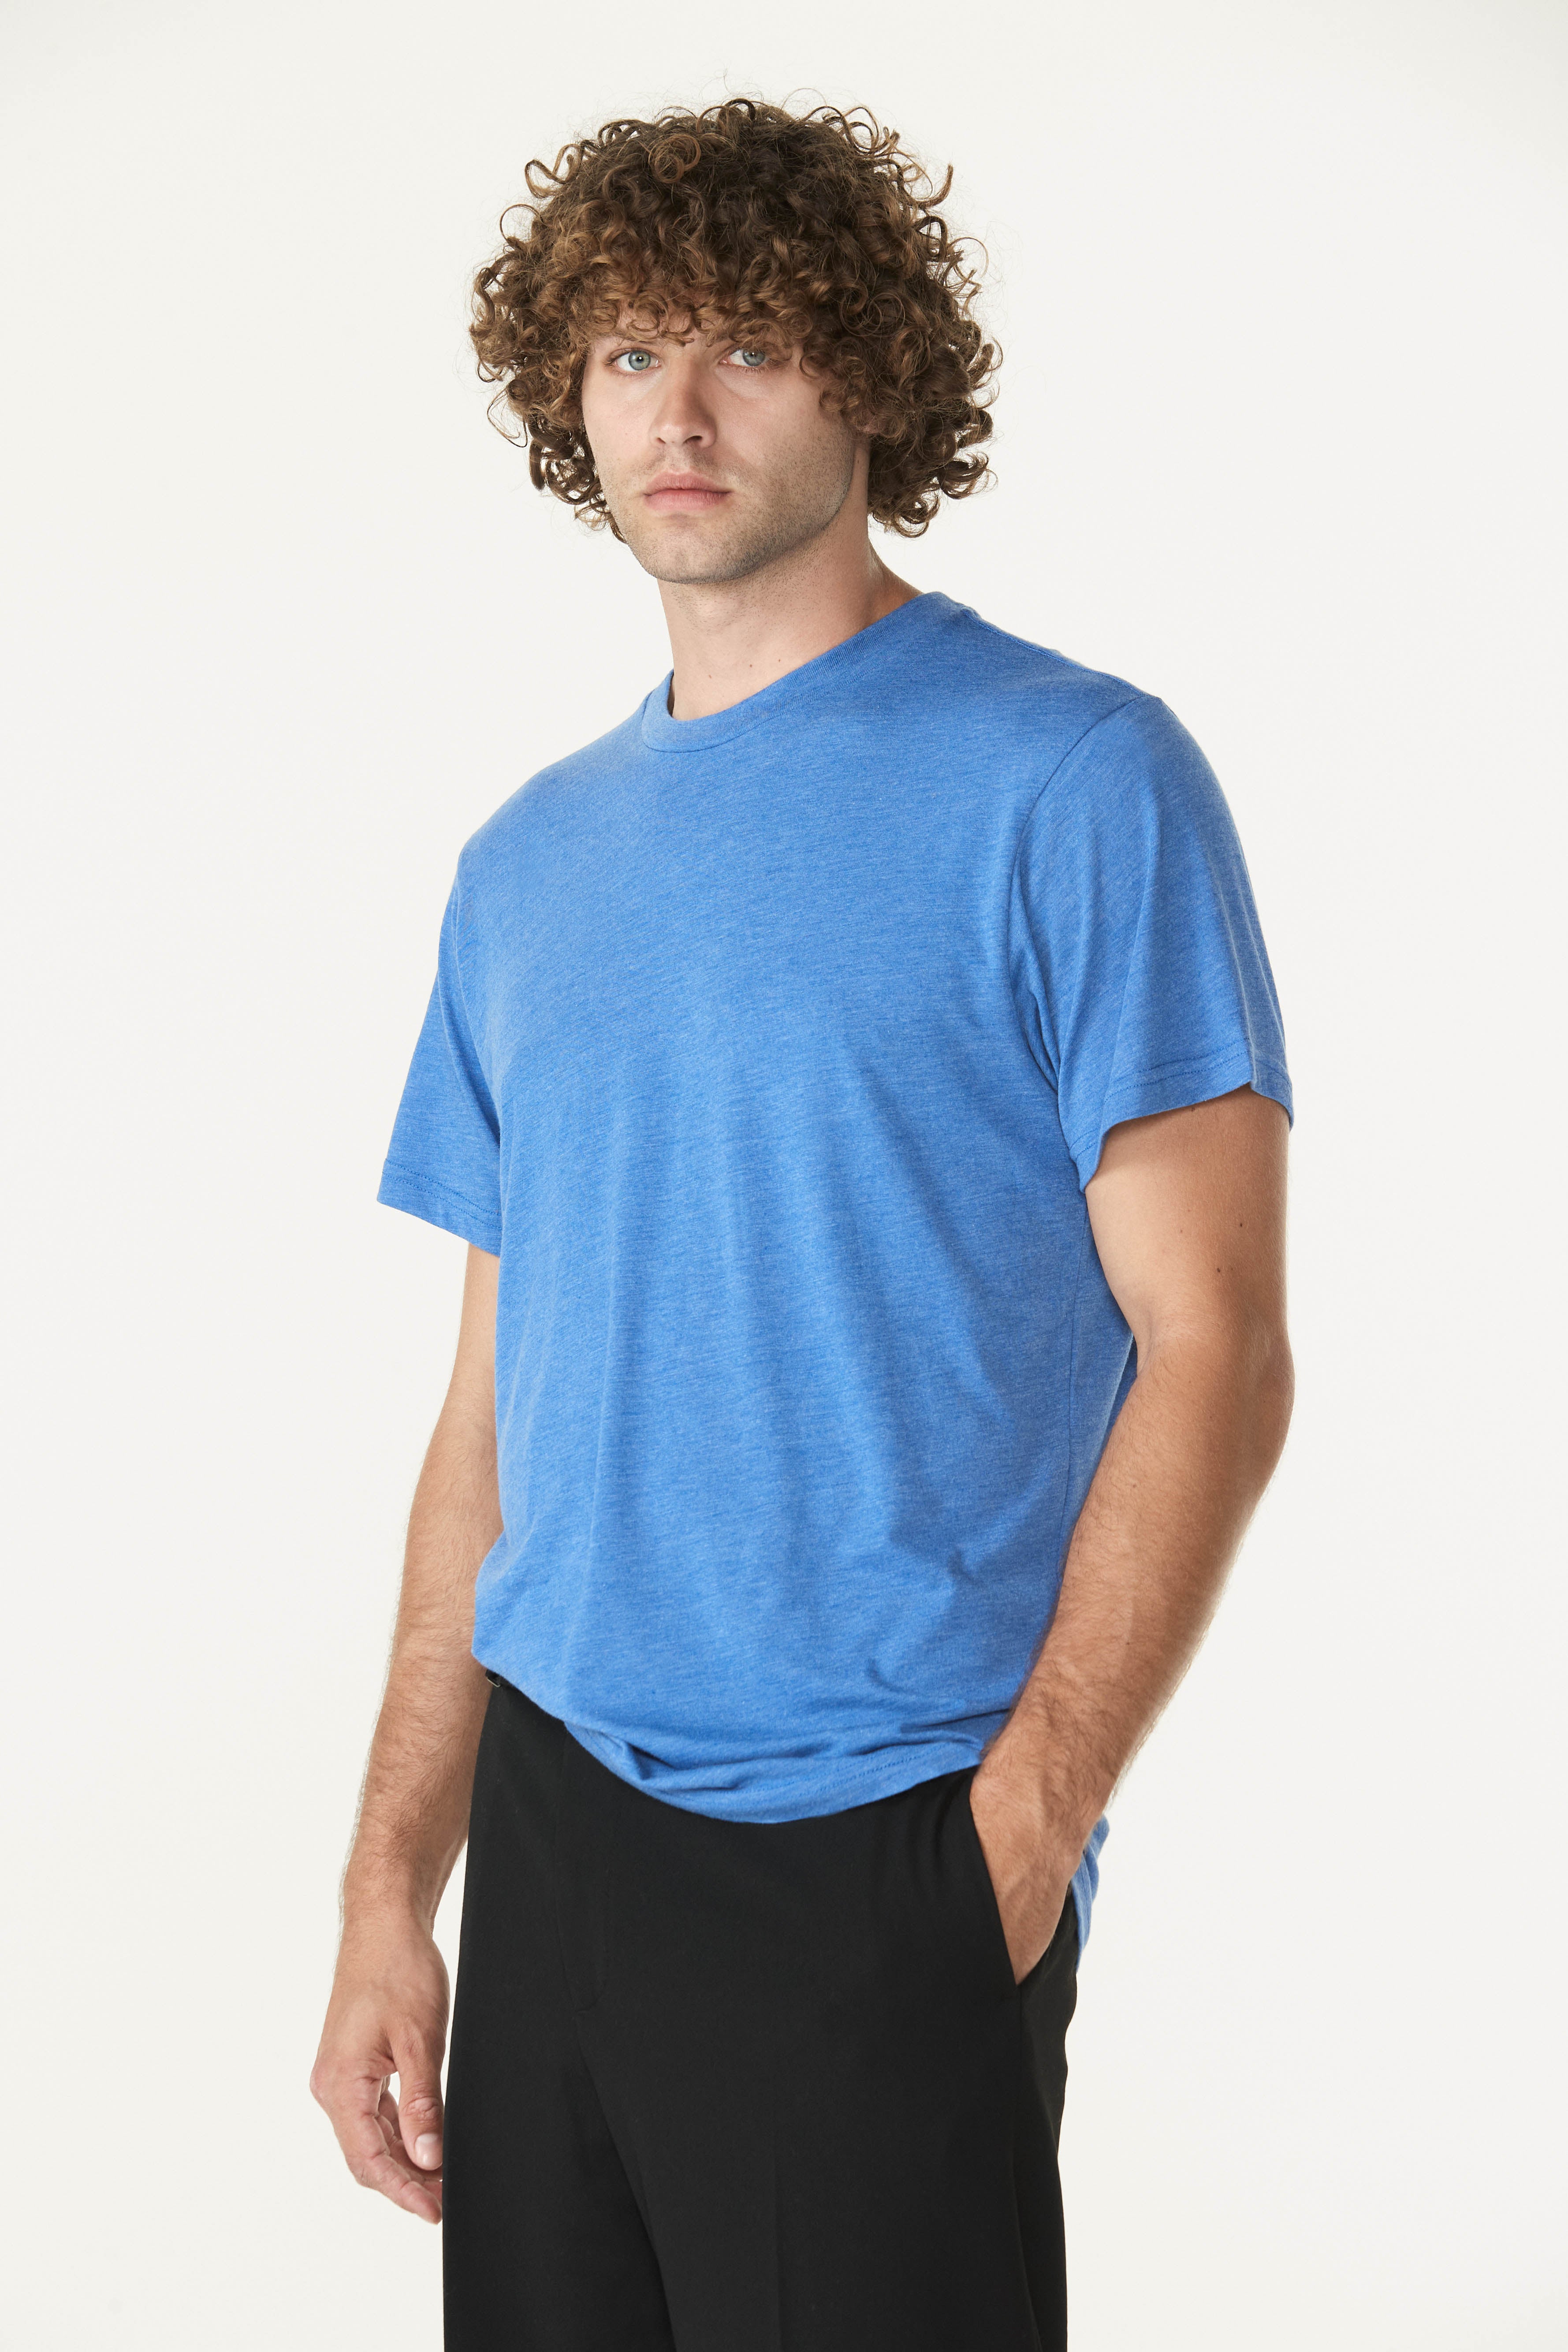 Men's Sportiqe Navy Philadelphia 76ers City Edition 76 Originals Comfy T-Shirt Size: Large